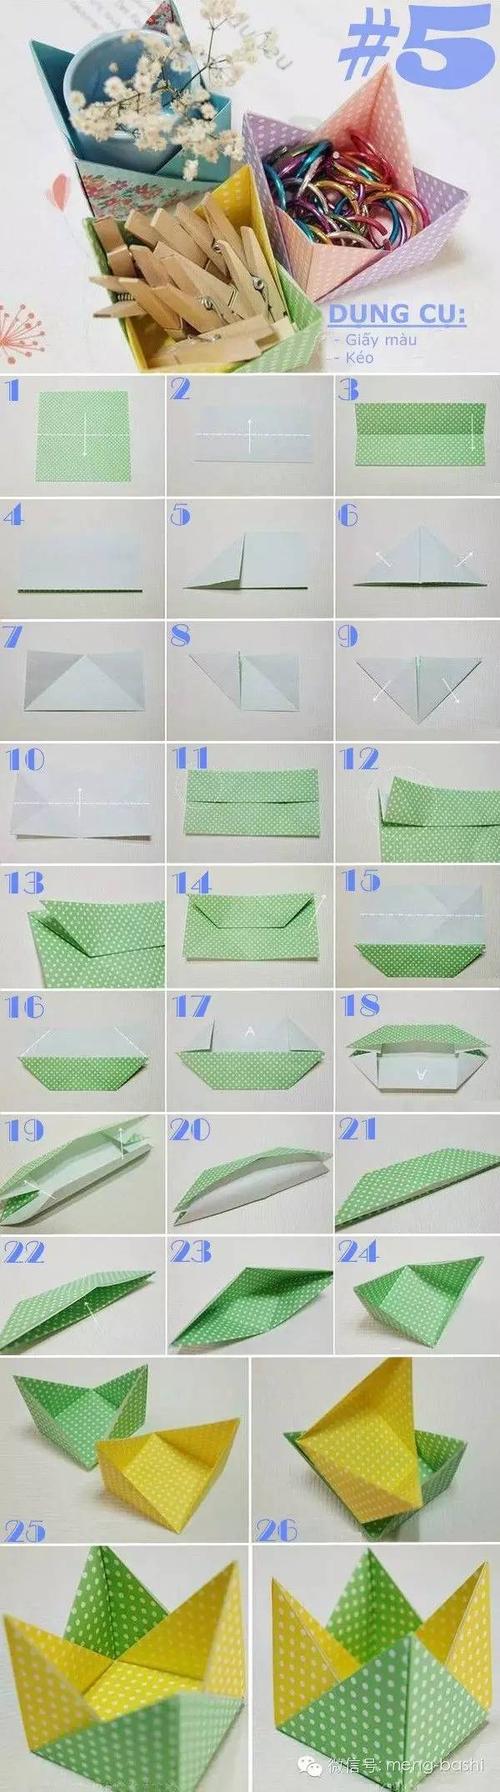 五星糖果收纳纸盒折纸 多边形创意纸盒折纸 方形纸盒折纸升级